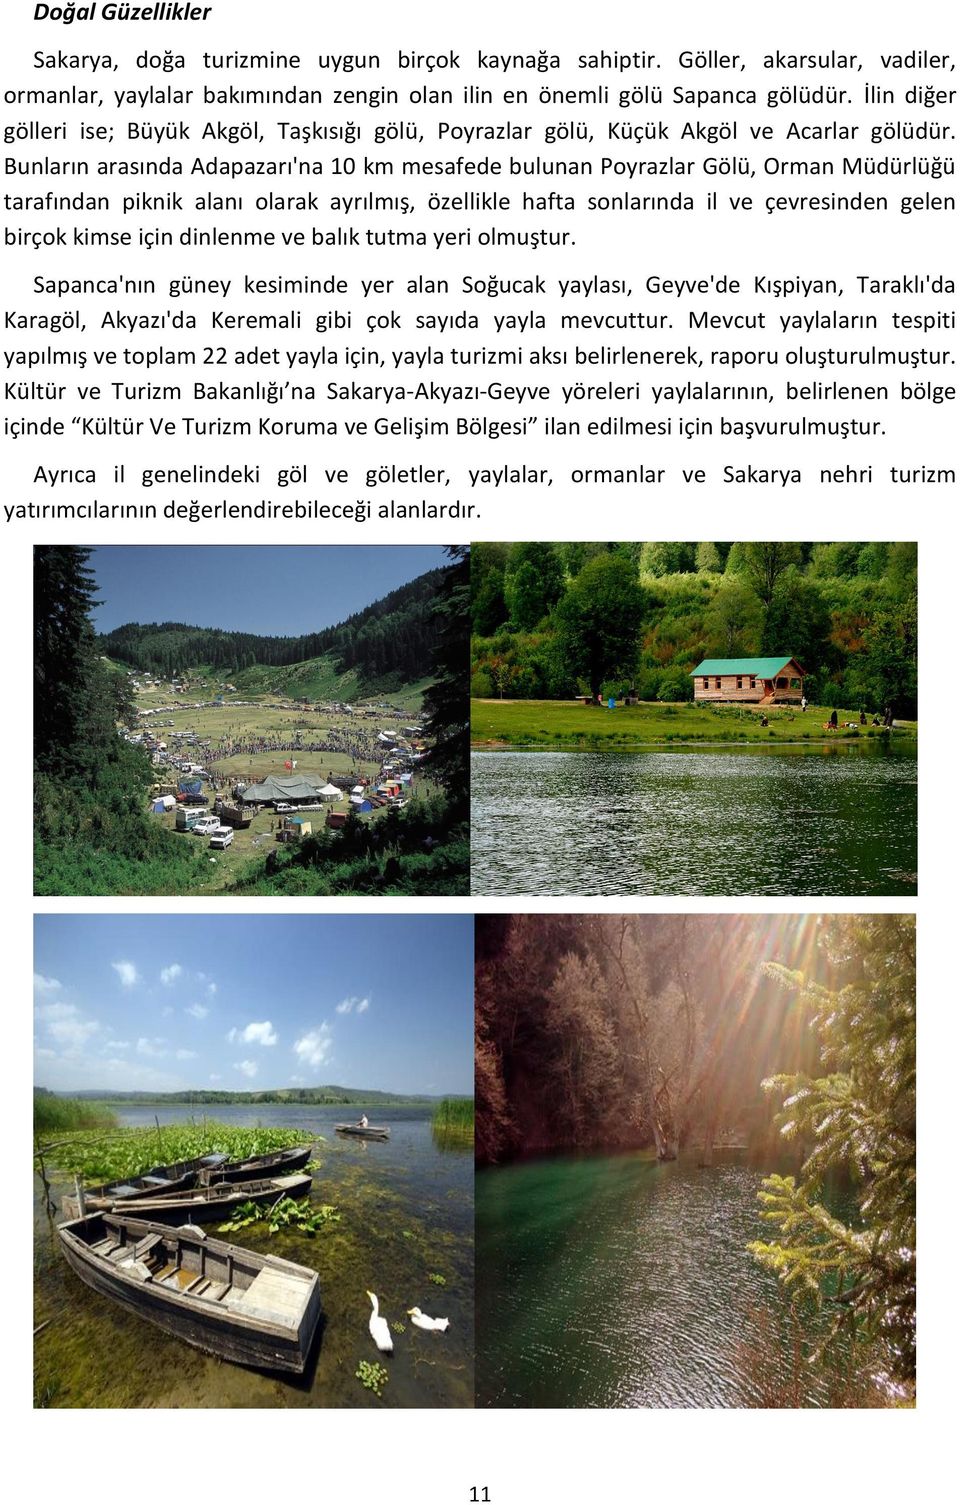 Bunların arasında Adapazarı'na 10 km mesafede bulunan Poyrazlar Gölü, Orman Müdürlüğü tarafından piknik alanı olarak ayrılmış, özellikle hafta sonlarında il ve çevresinden gelen birçok kimse için